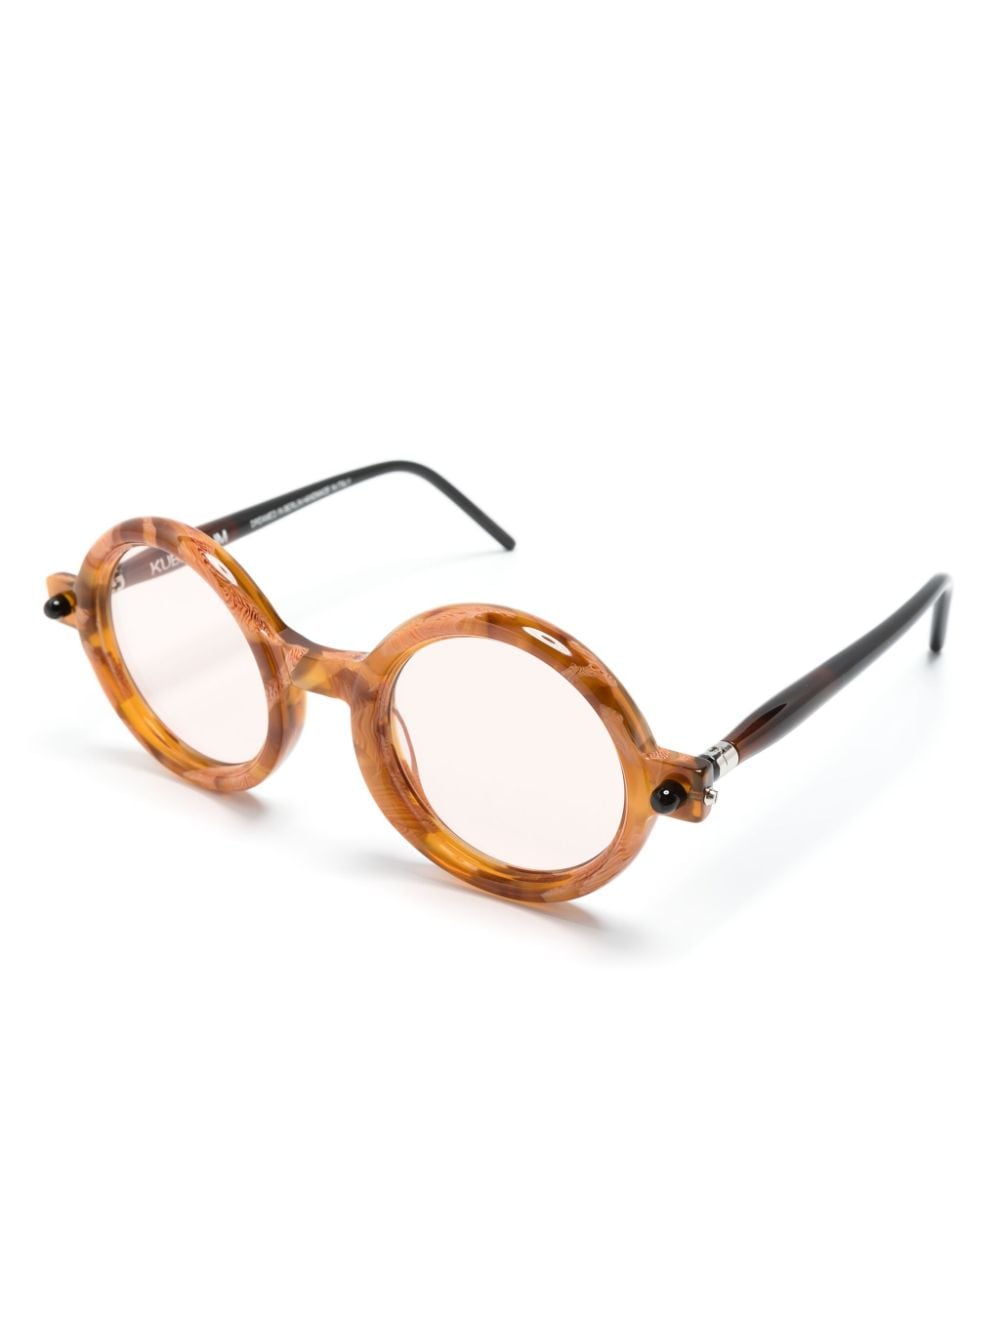 Kuboraum P1 round-frame glasses - Bruin